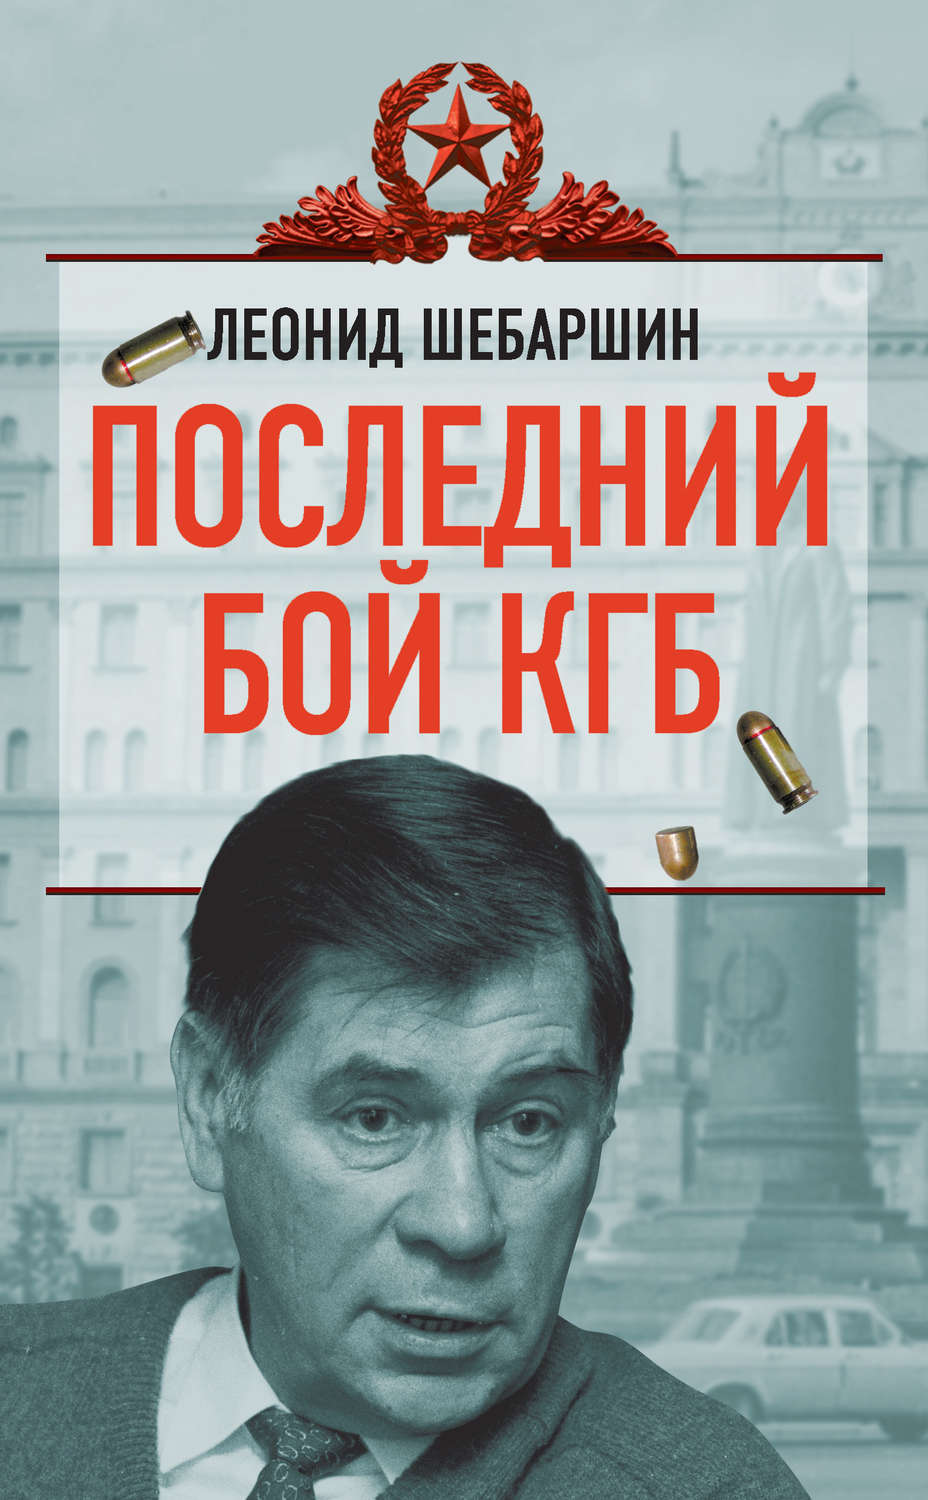 Жуков юрий николаевич историк книги скачать бесплатно